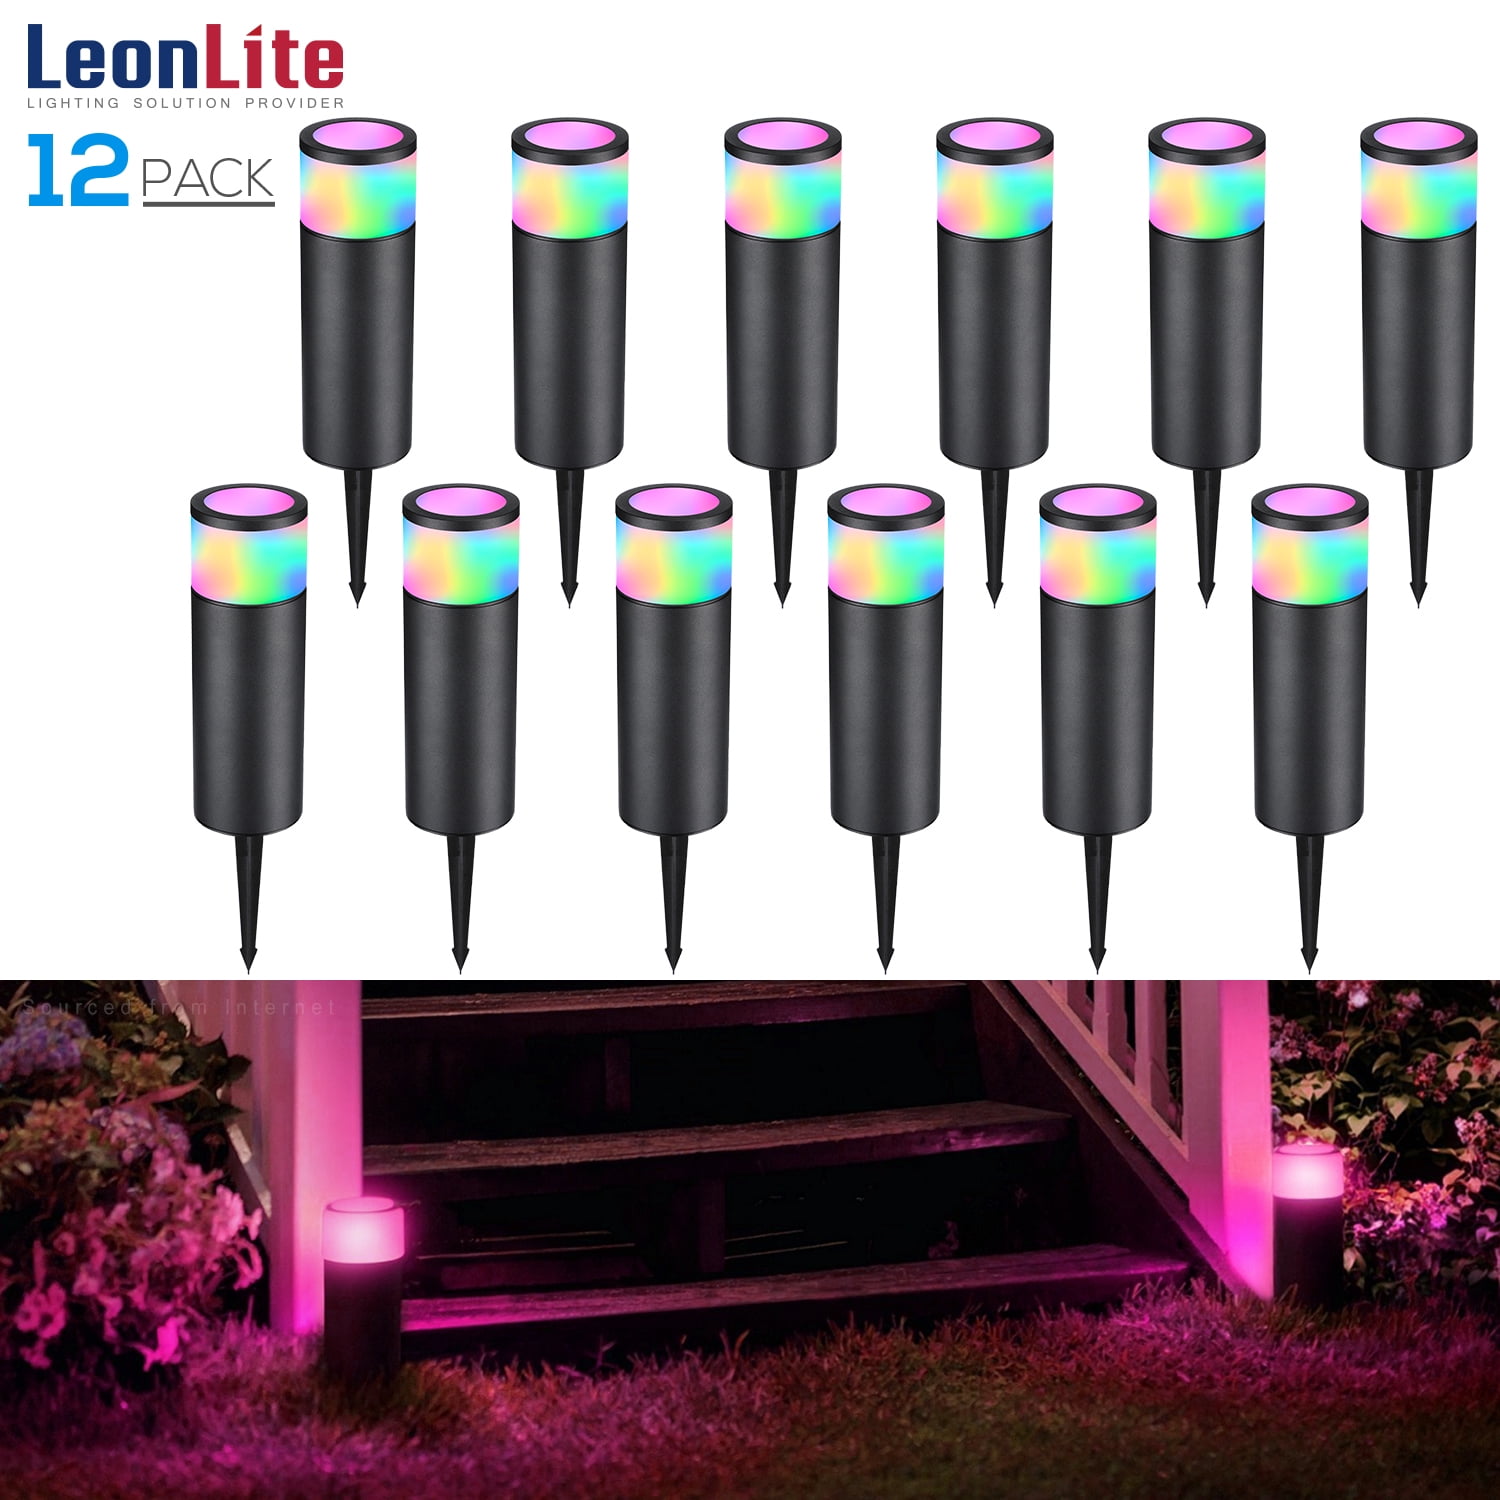 LEONLITE 12 Pack Low Voltage Color Changing LED Landscape Lighting, 4.5W  Bollard Pathway Lights, 12V-24V AC/DC, Aluminum